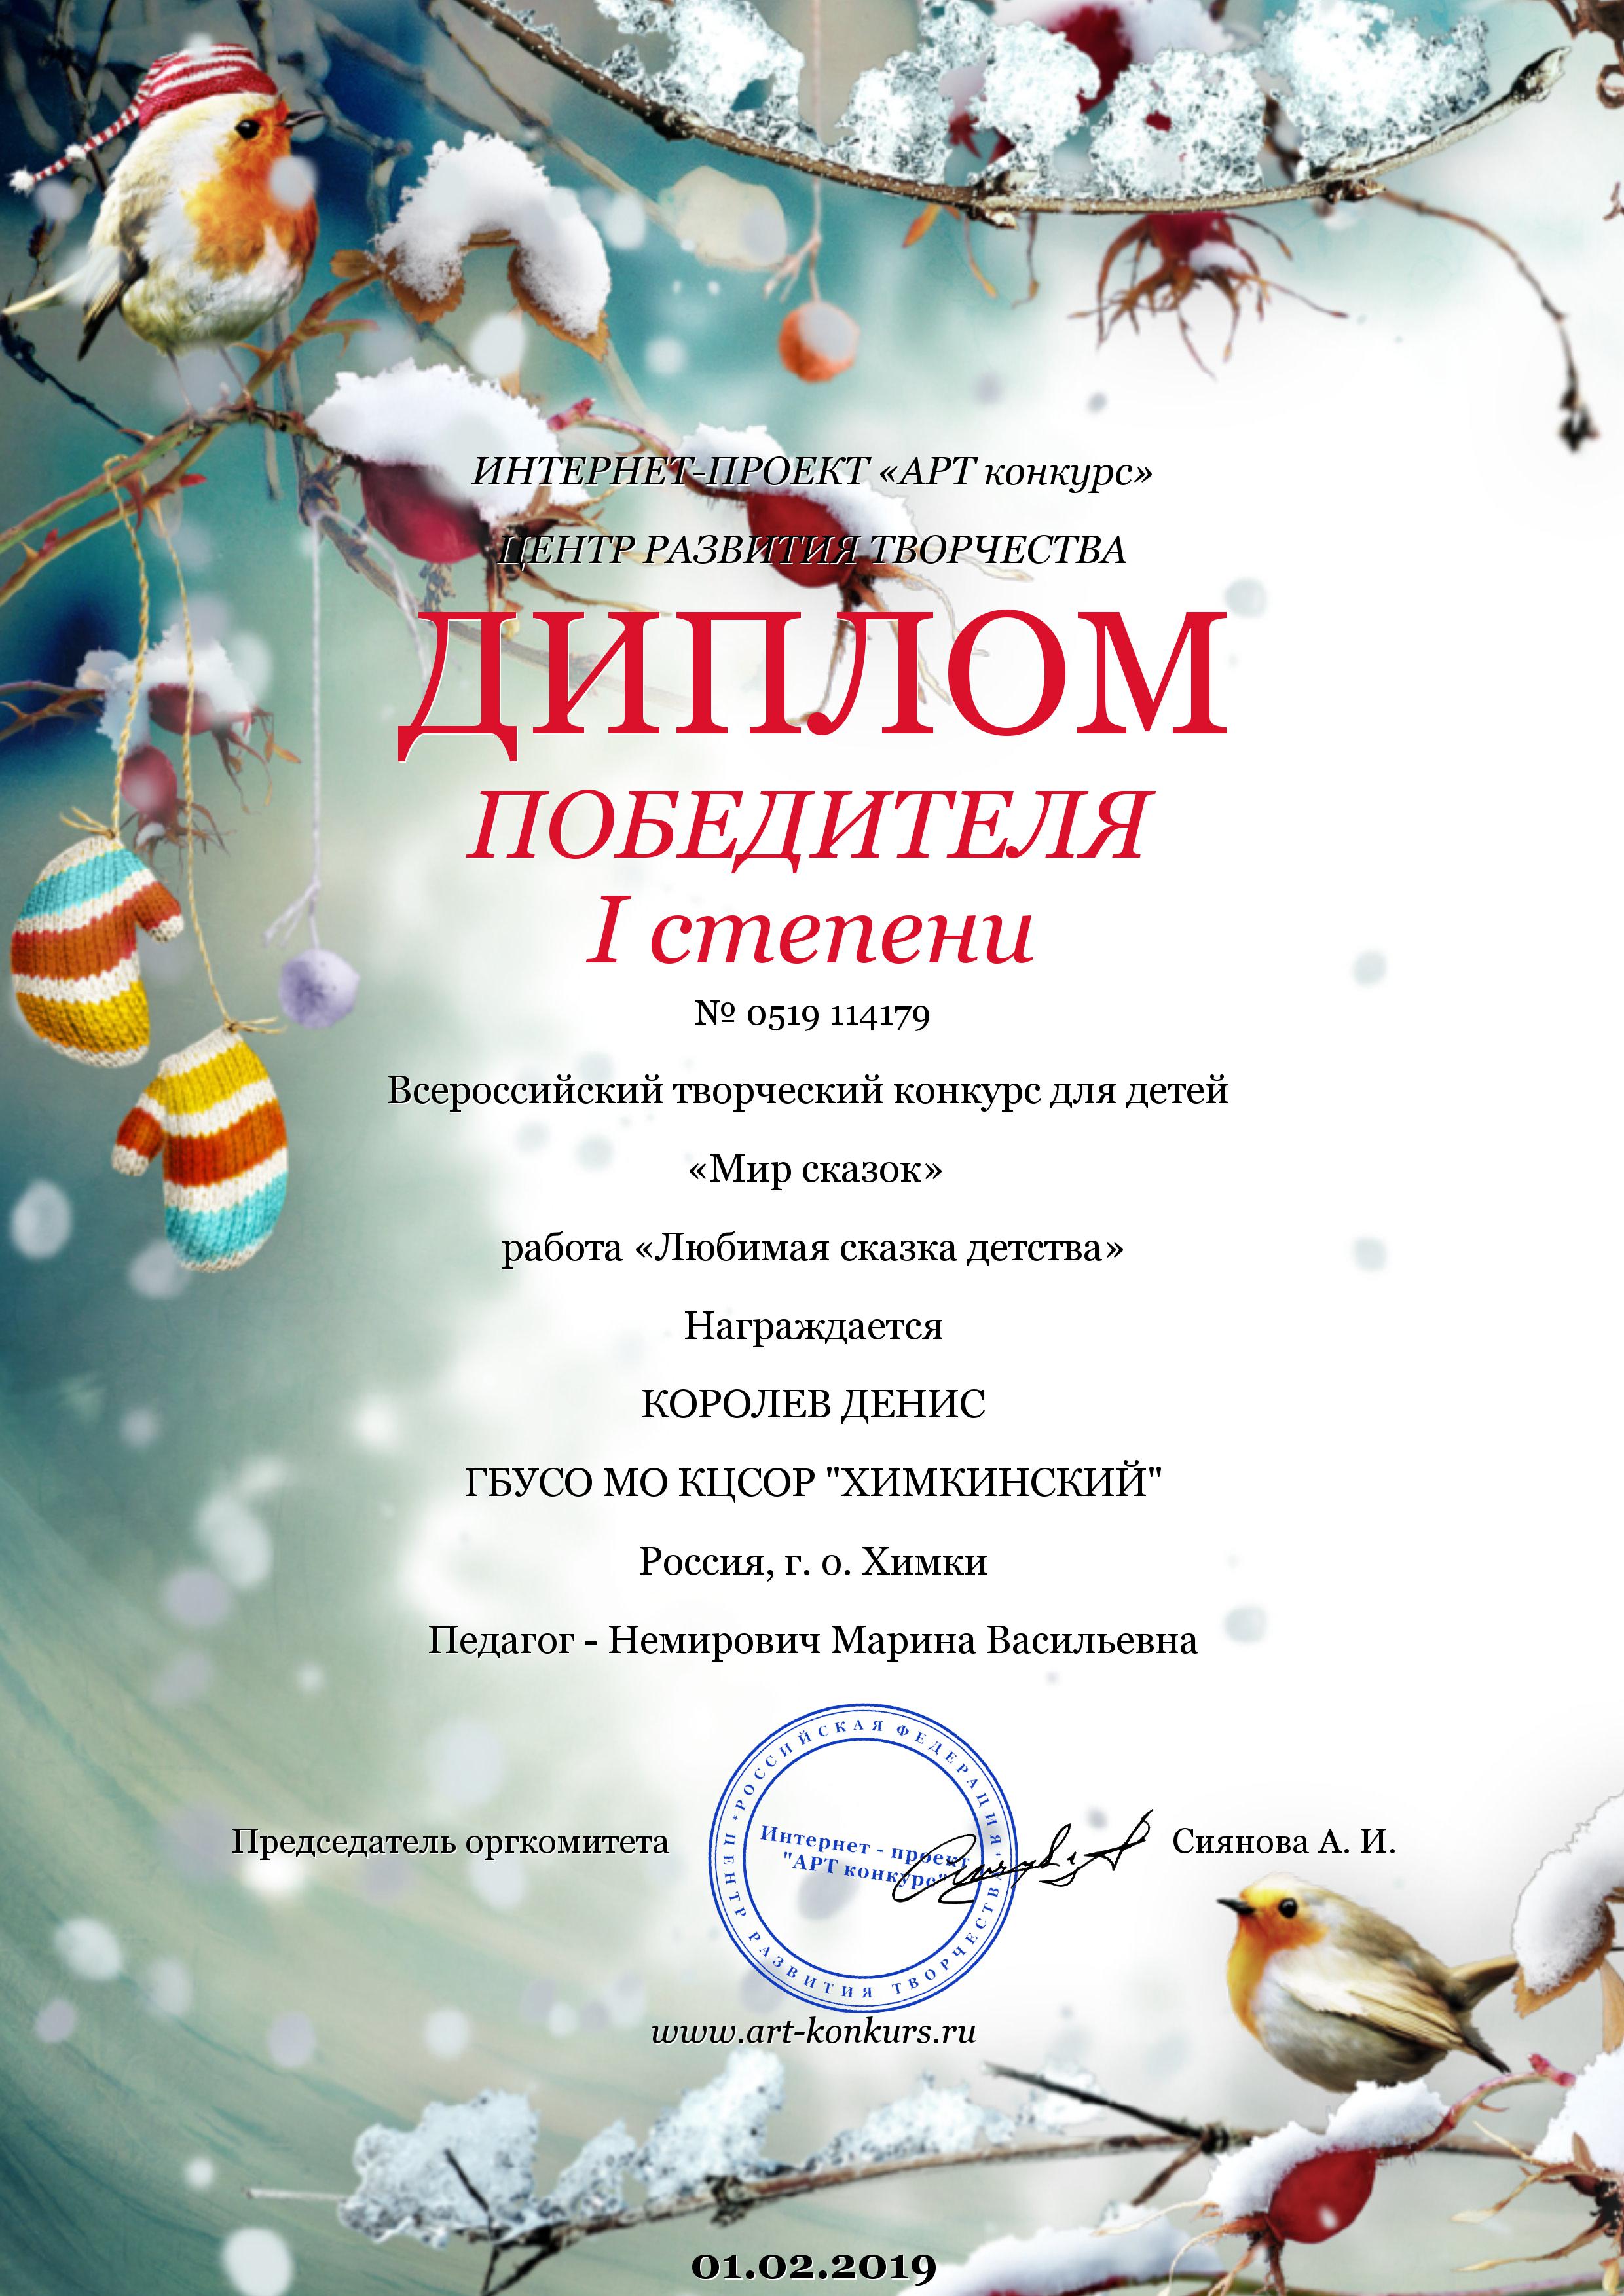 Диплом Победителя I степени за участие во Всероссийском творческом конкурсе для детей "Мир сказок"